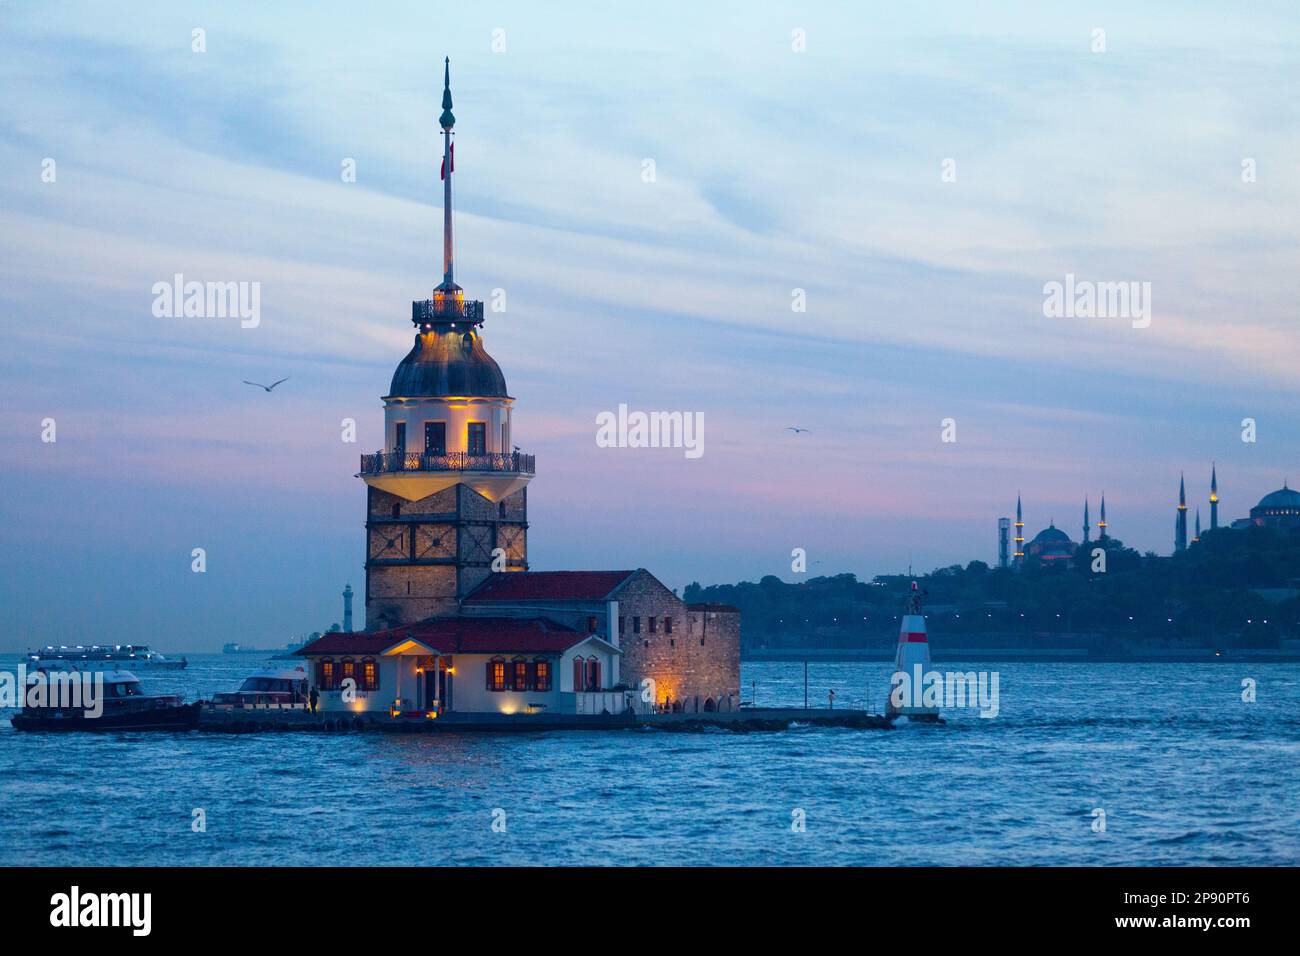 Istanbul, Türkei - Mai 12 2019: Der Jungfrauenturm, auch bekannt als Leander's Tower seit der mittelalterlichen byzantinischen Zeit, ist ein Turm, der auf einer kleinen isl liegt Stockfoto